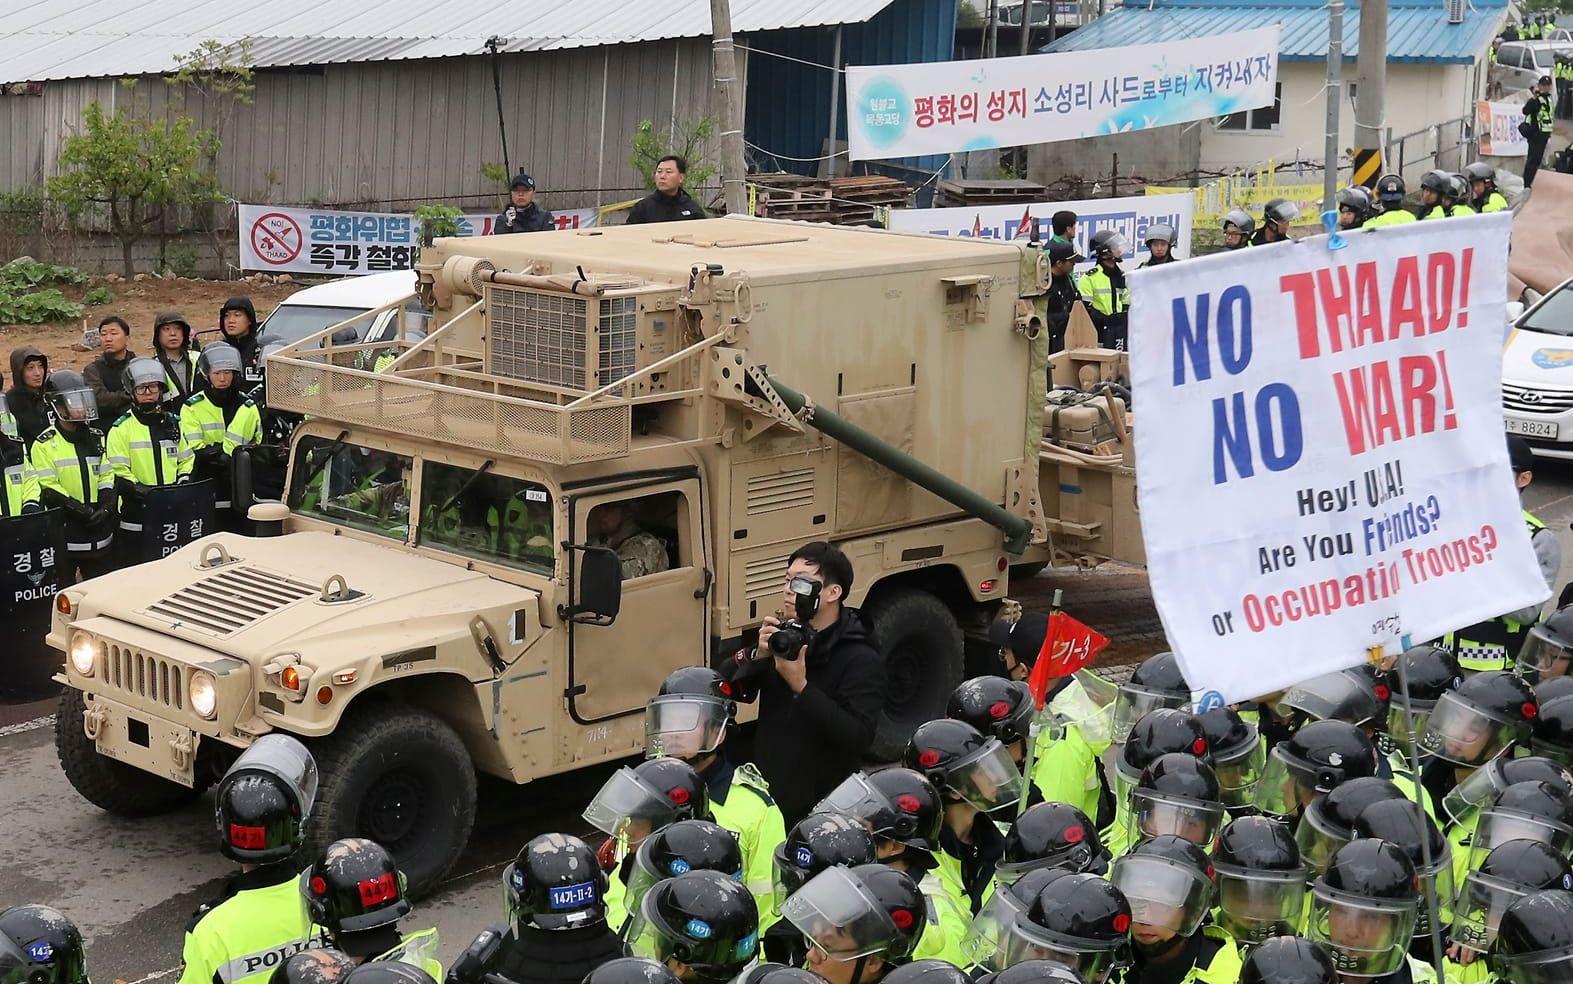 Sydkoreanska demonstrationer mot det amerikanska missilsystem som ska placeras på Sydkorea. BILD: TT